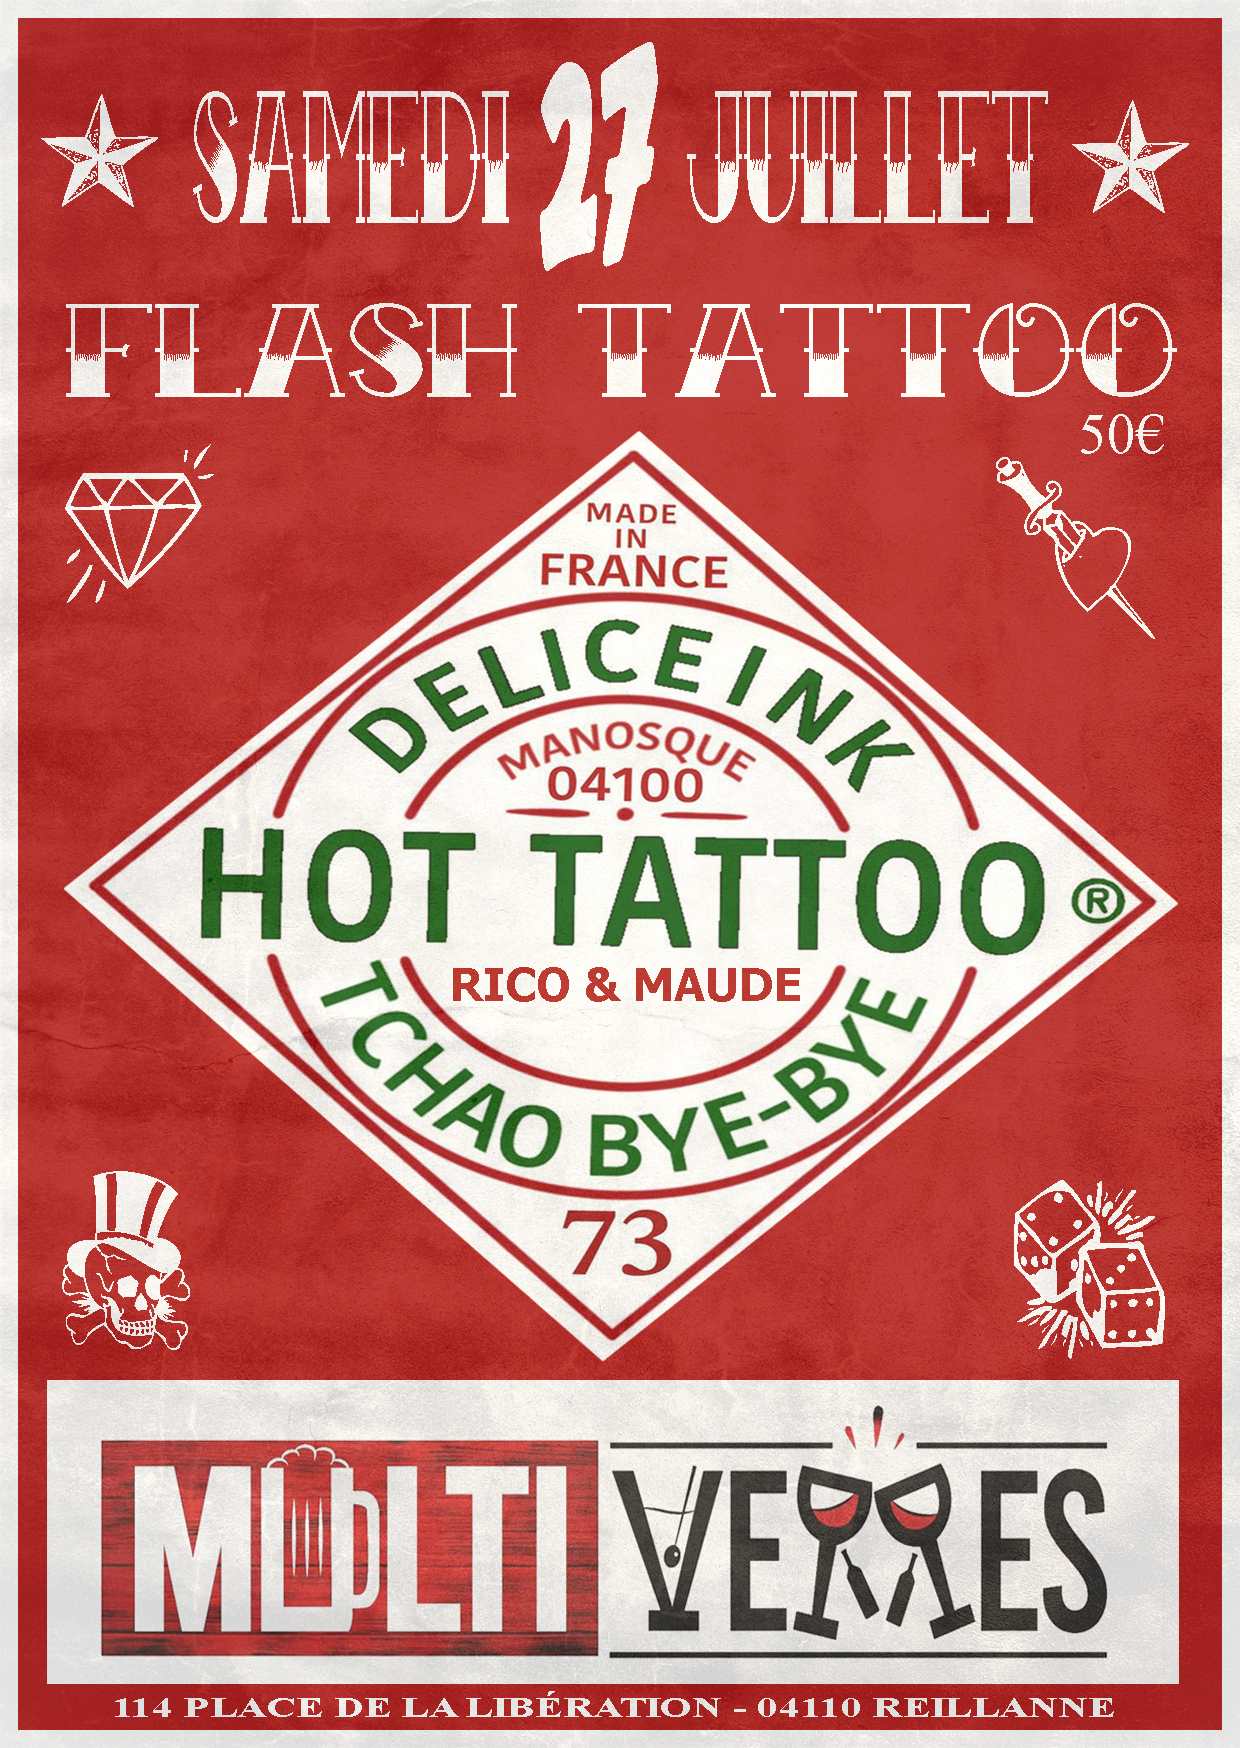 Flash tattoo